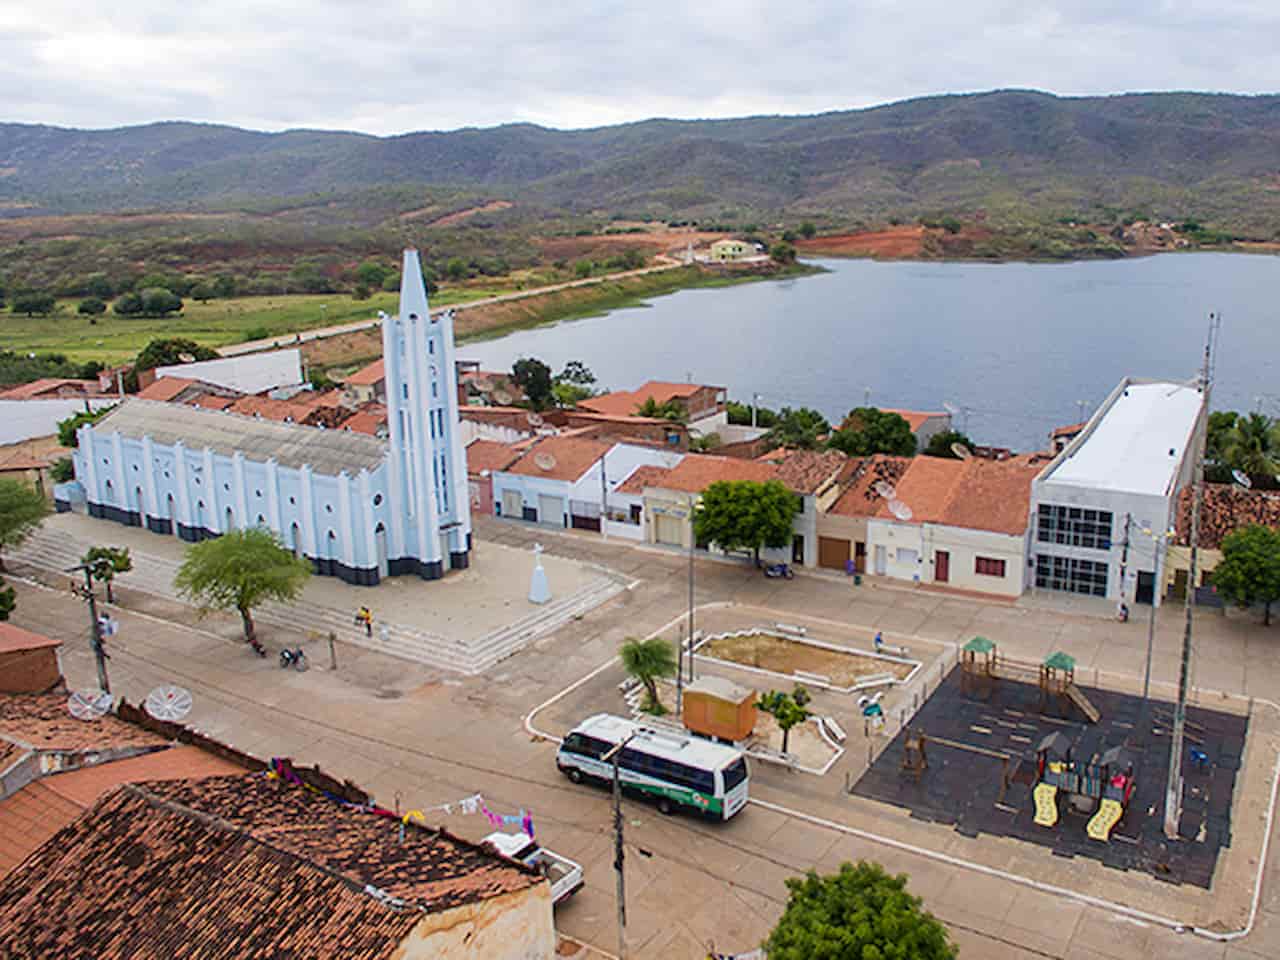 Imagem aérea da cidade de Granjeiro, no Ceará.